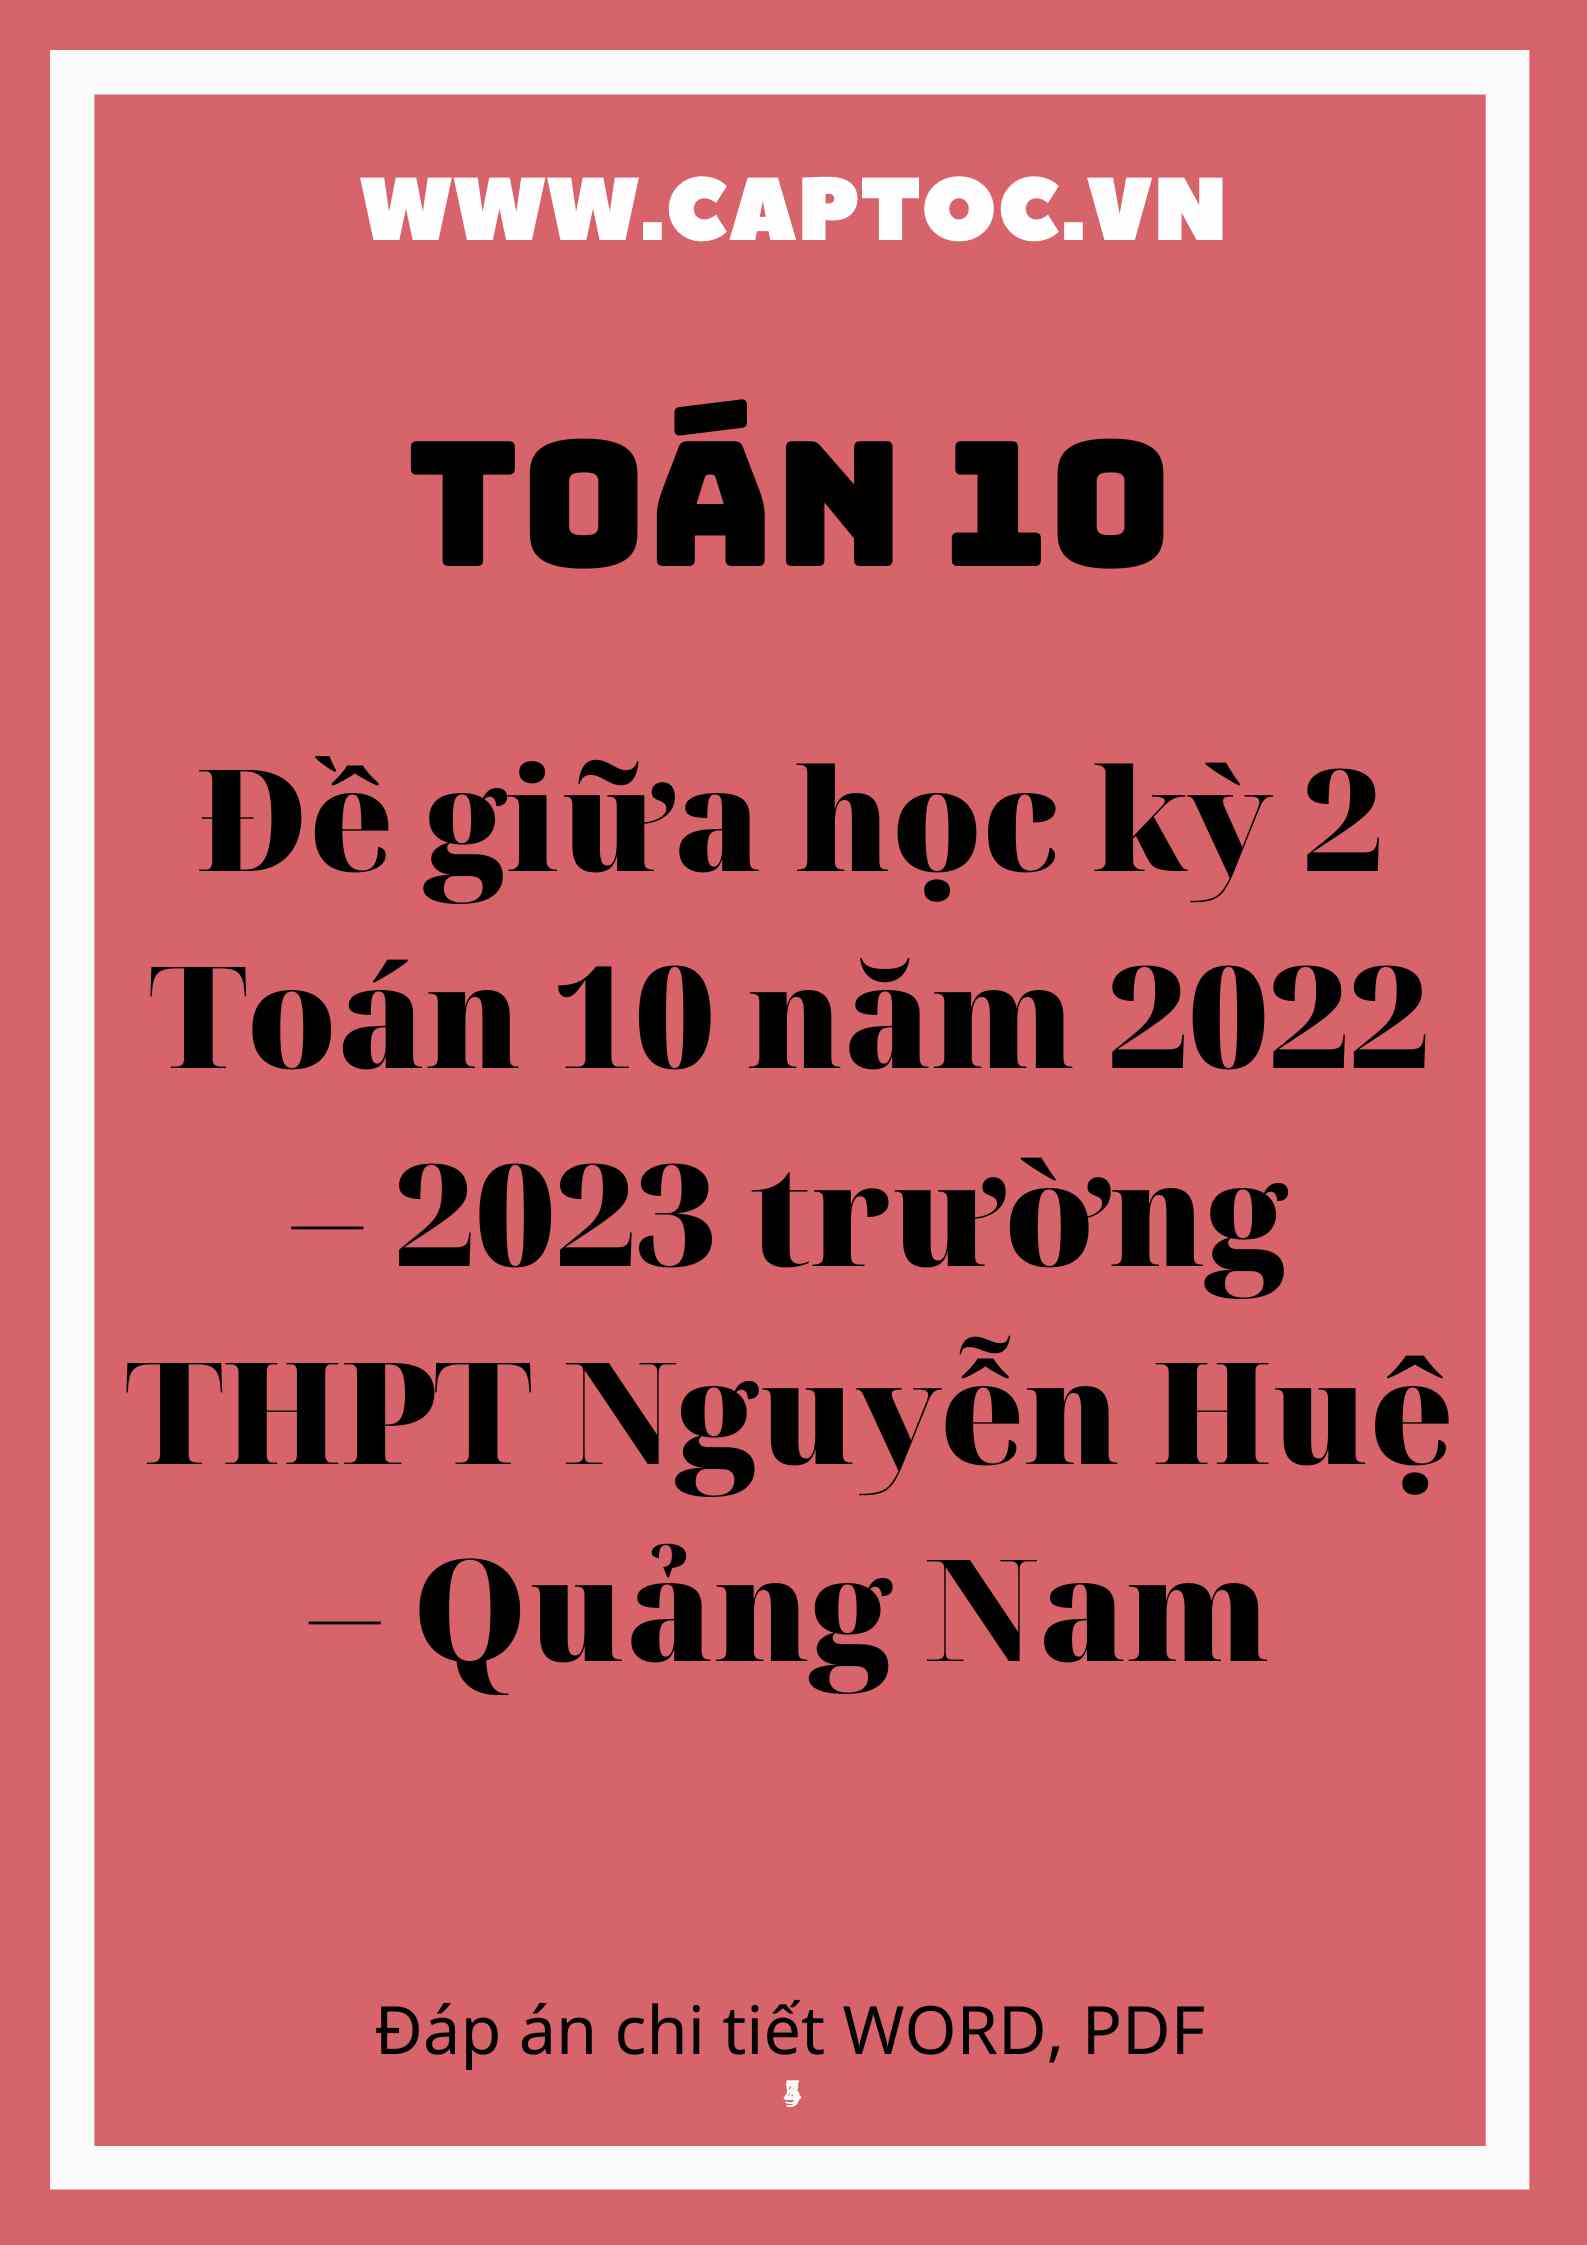 Đề giữa học kỳ 2 Toán 10 năm 2022 – 2023 trường THPT Nguyễn Huệ – Quảng Nam